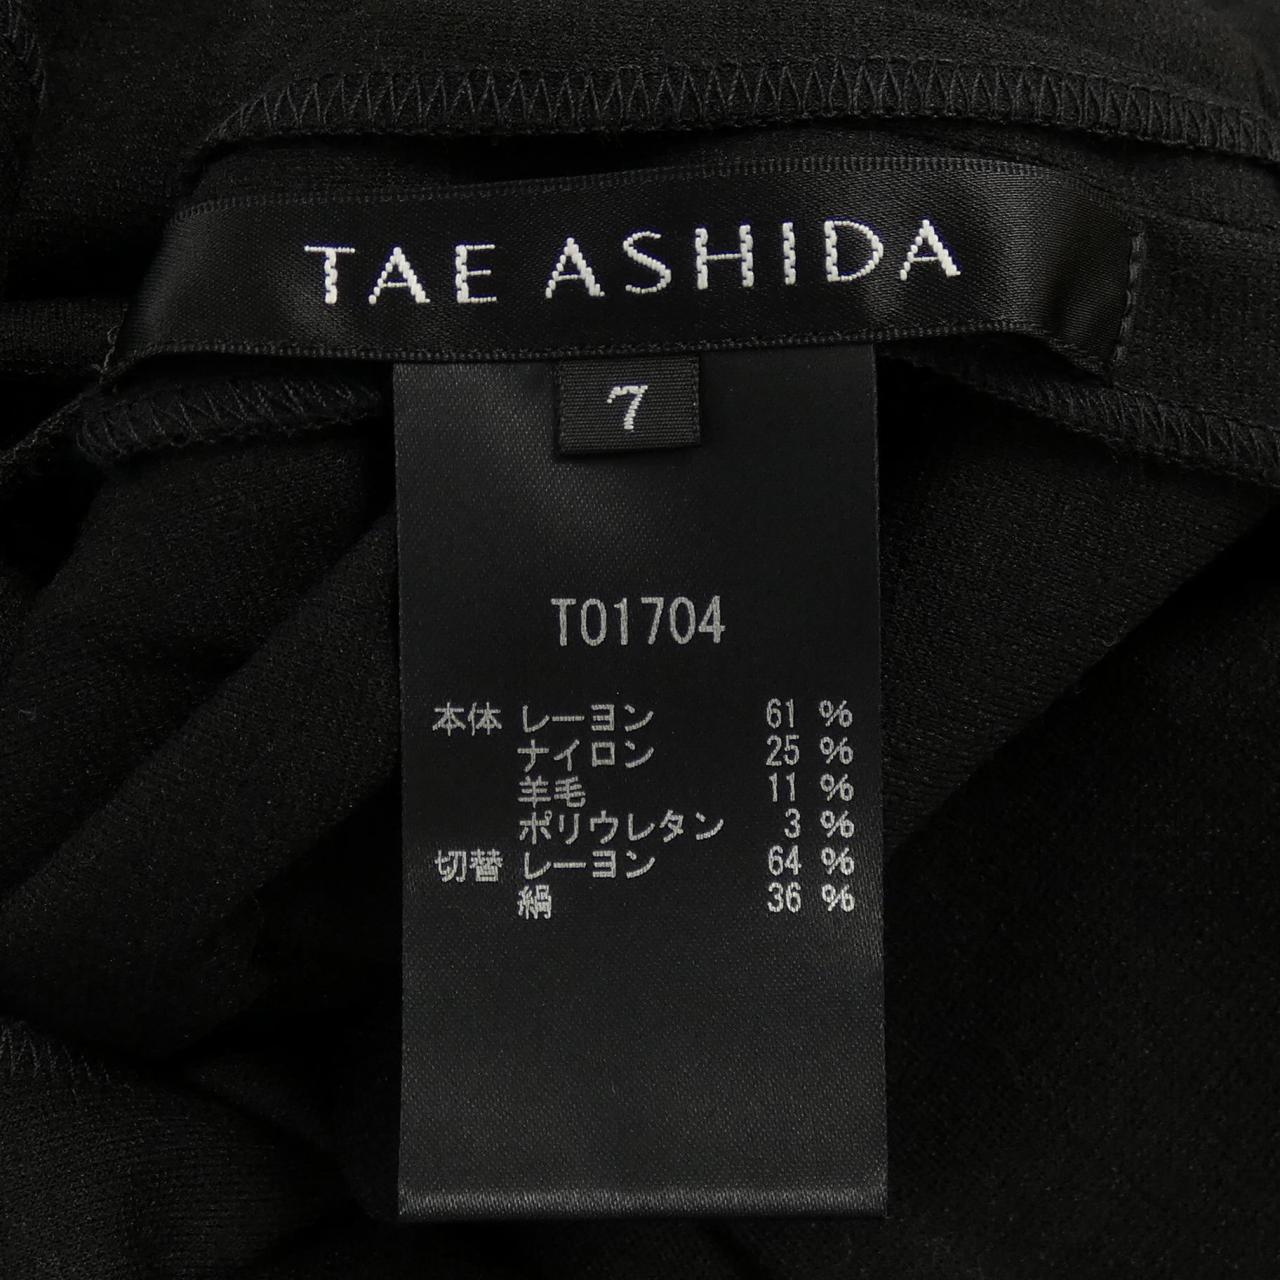 アンディーAndyパールビーズ付き袖シフォンワンピースドレス新品未使用タグ付き ドレス 日本最大のブランド